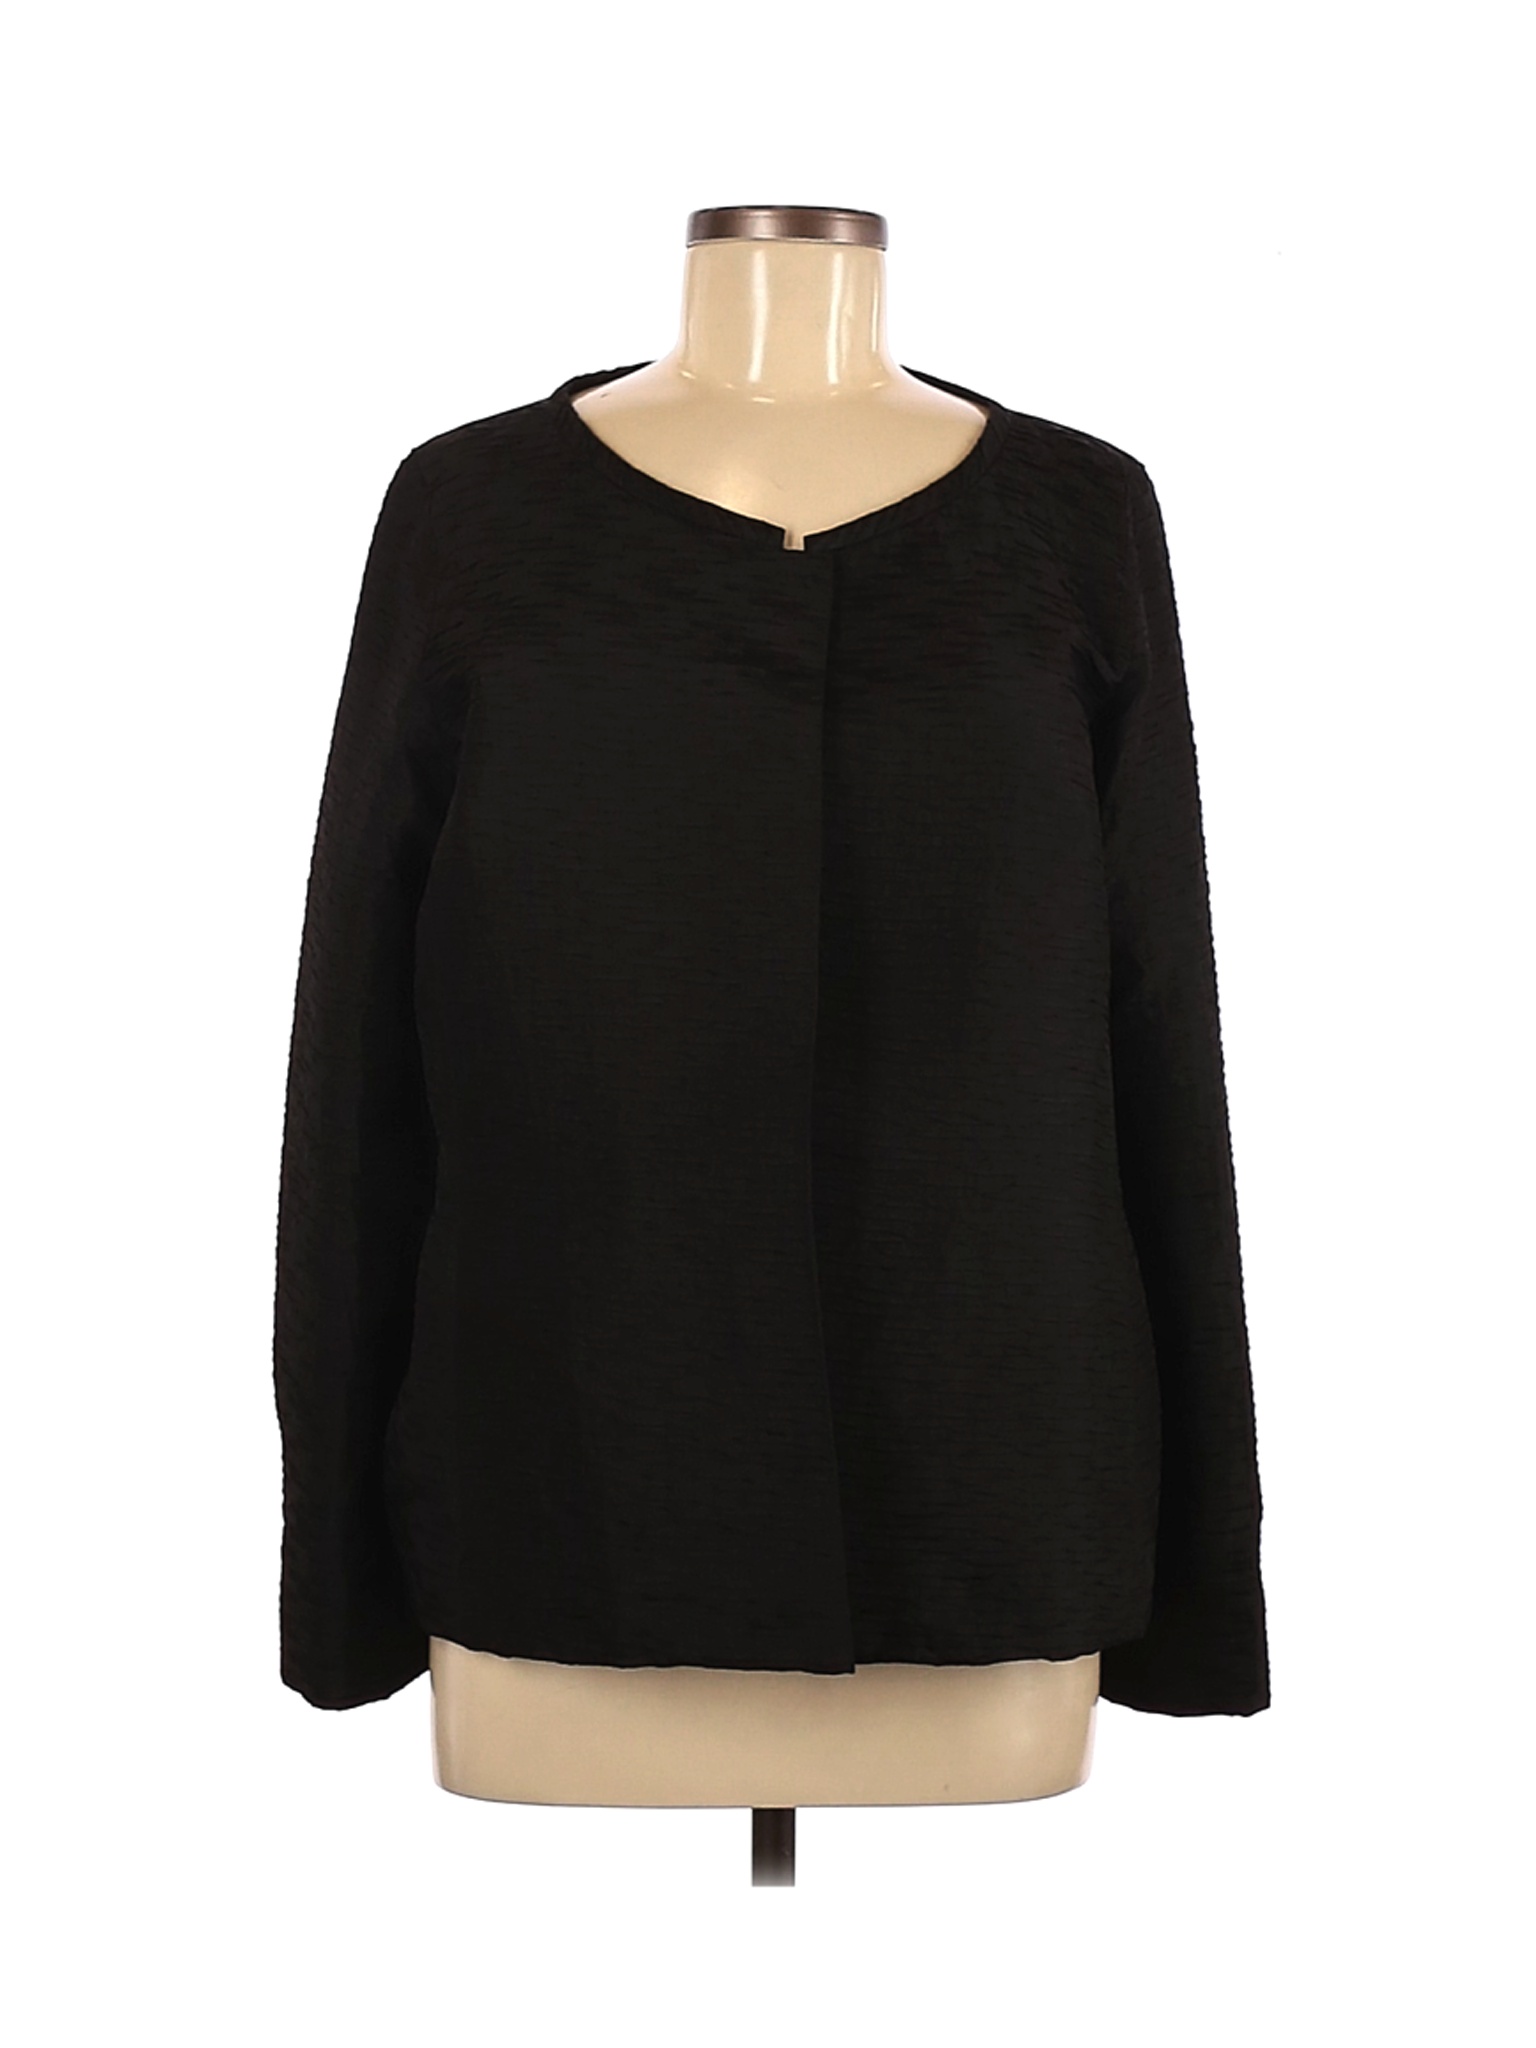 Eileen Fisher Women Black Long Sleeve Silk Top M | eBay